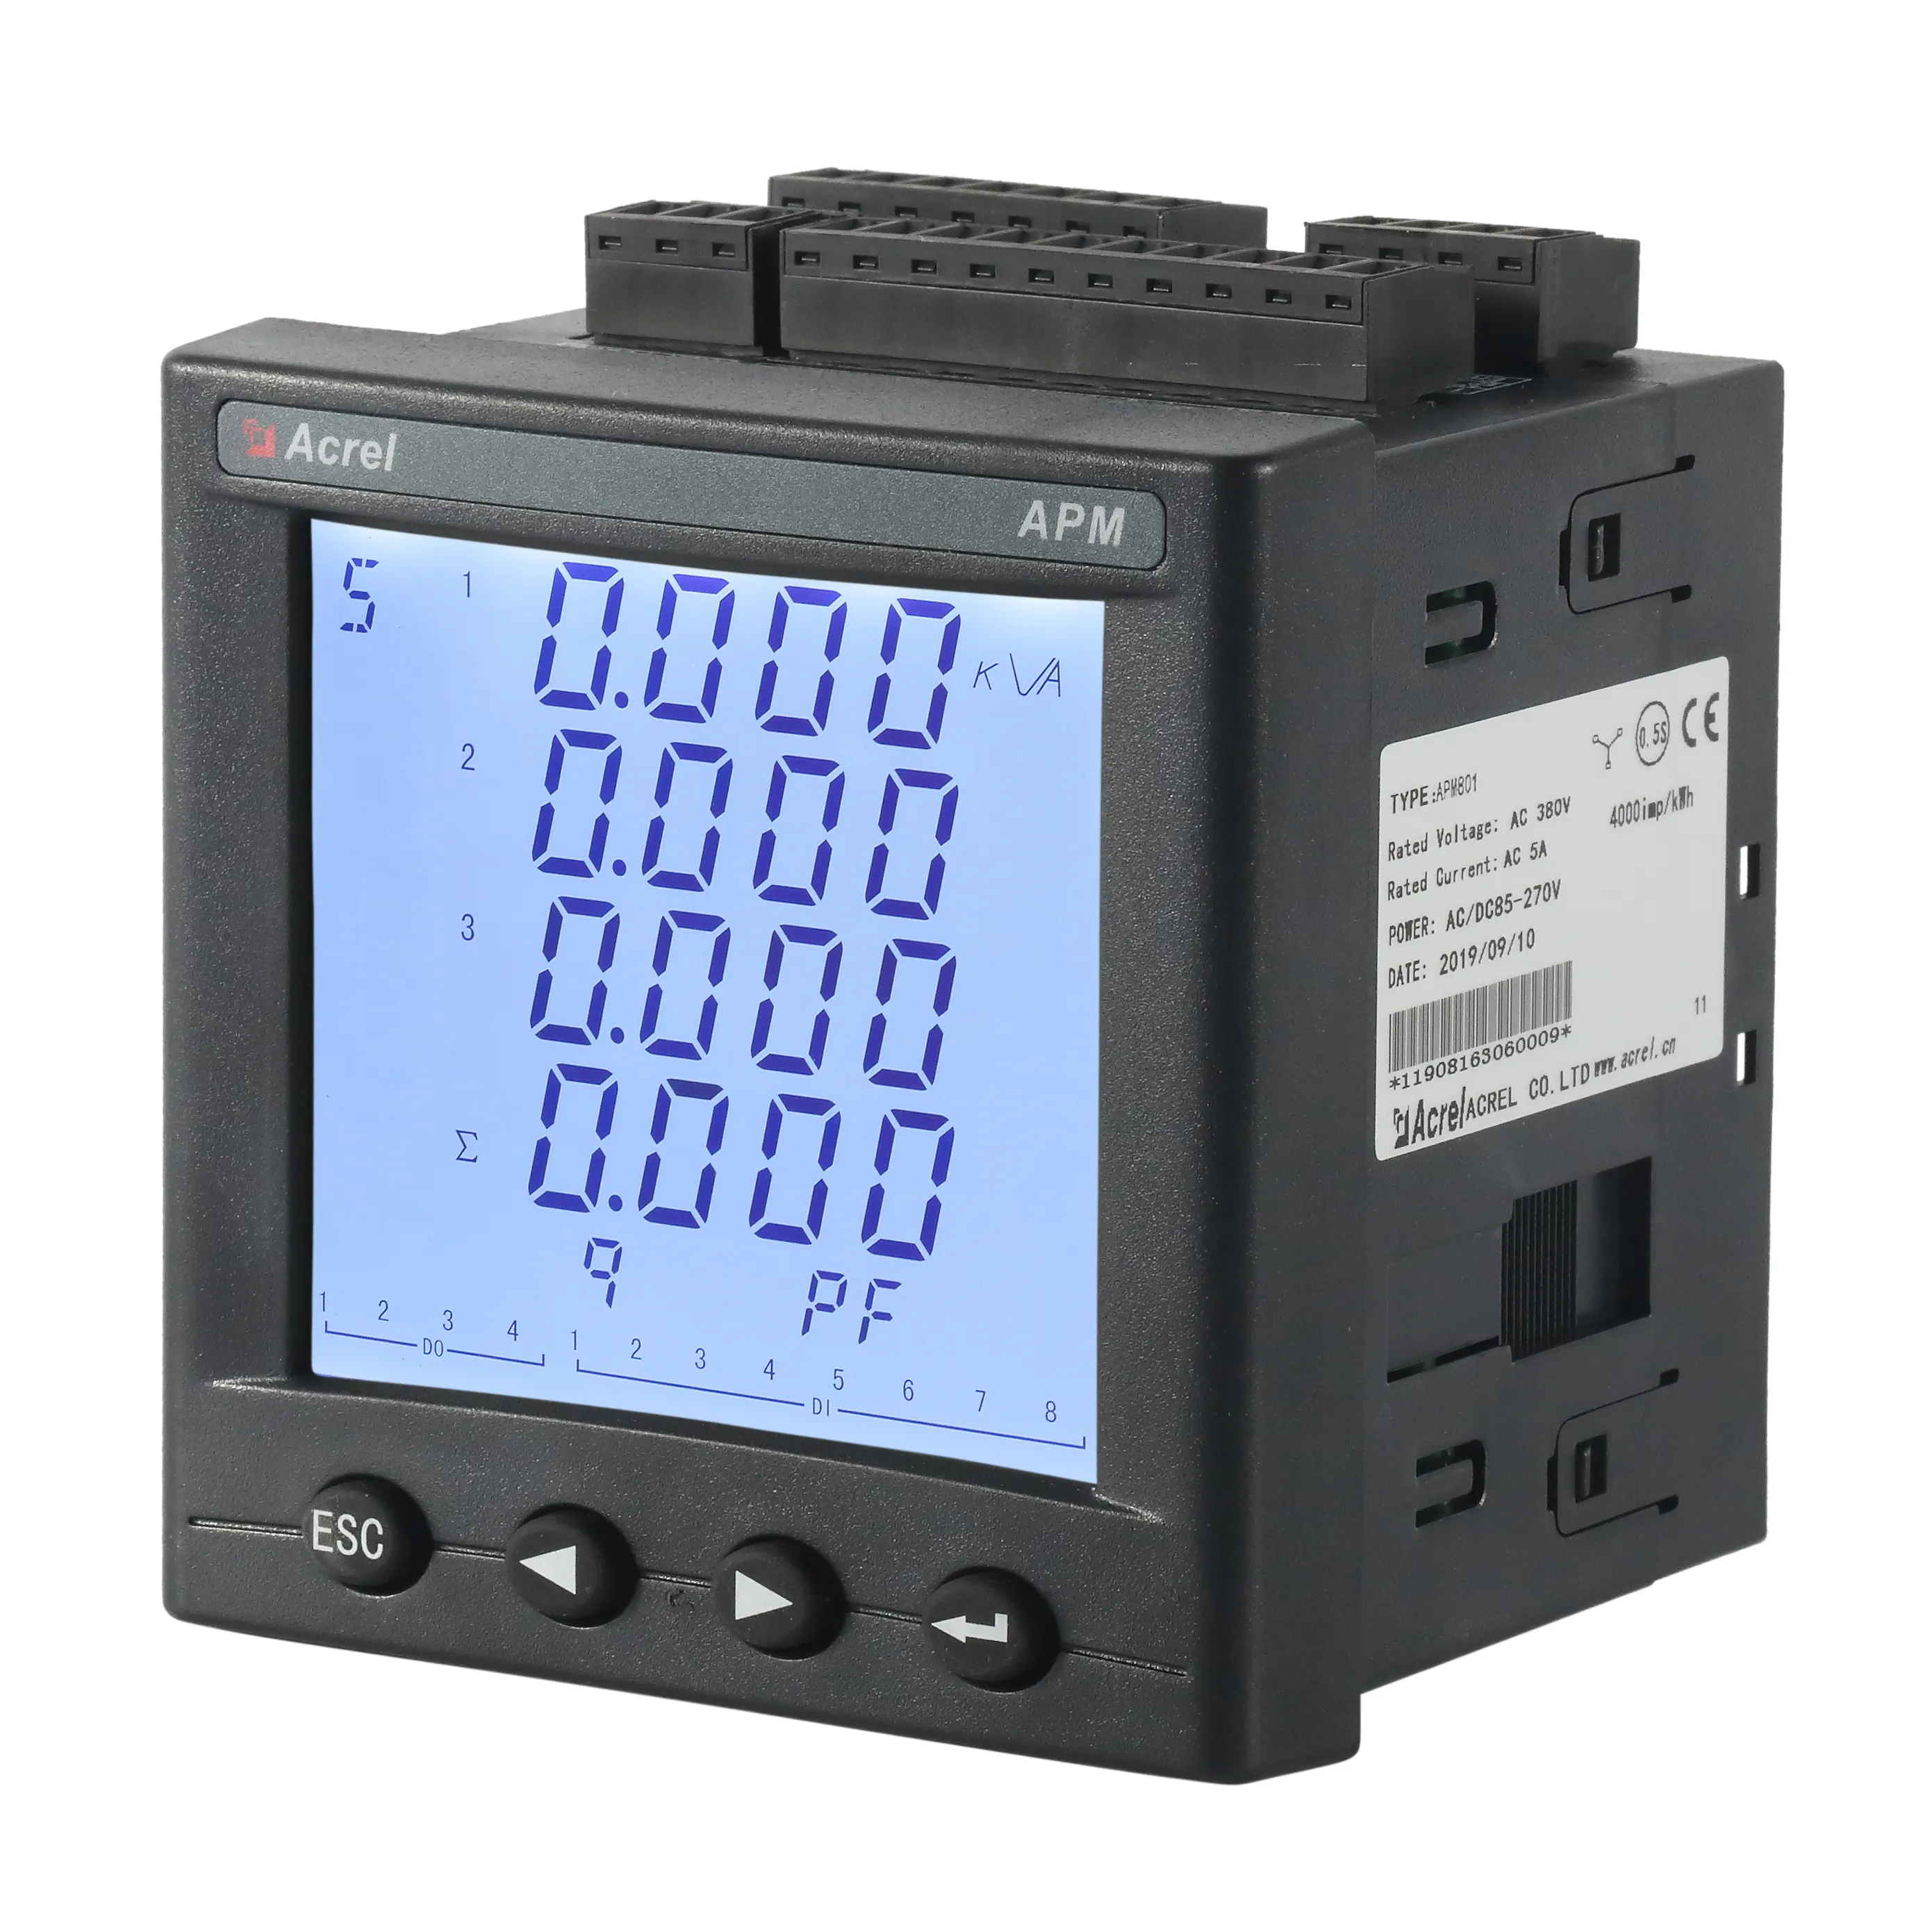 Acrel APM800 dijital 3 fazlı yüksek doğruluk enerji metre modbus rtu tcp kayıt ve SD kart depolama fonksiyonu ile